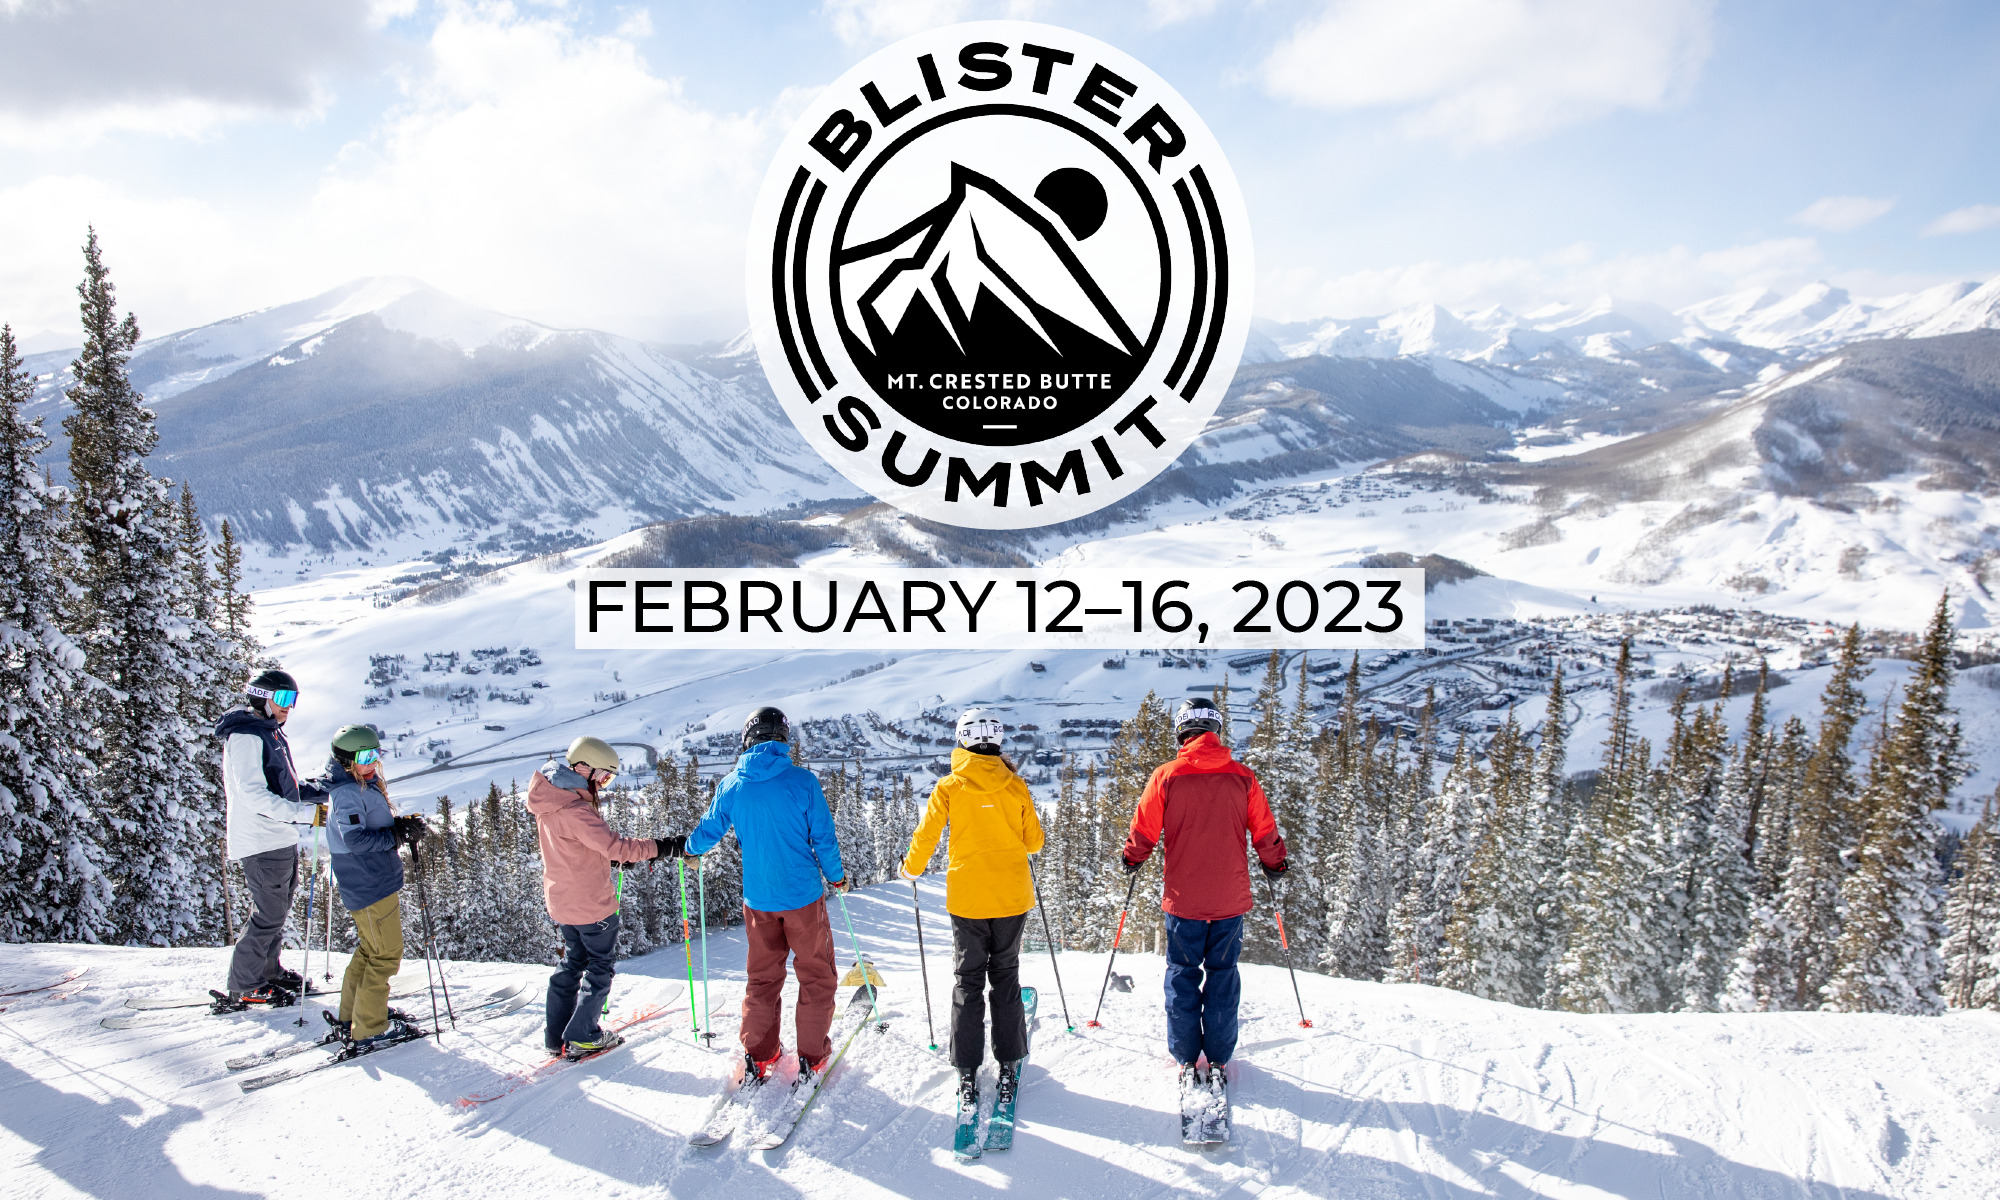 Blister Summit 2023